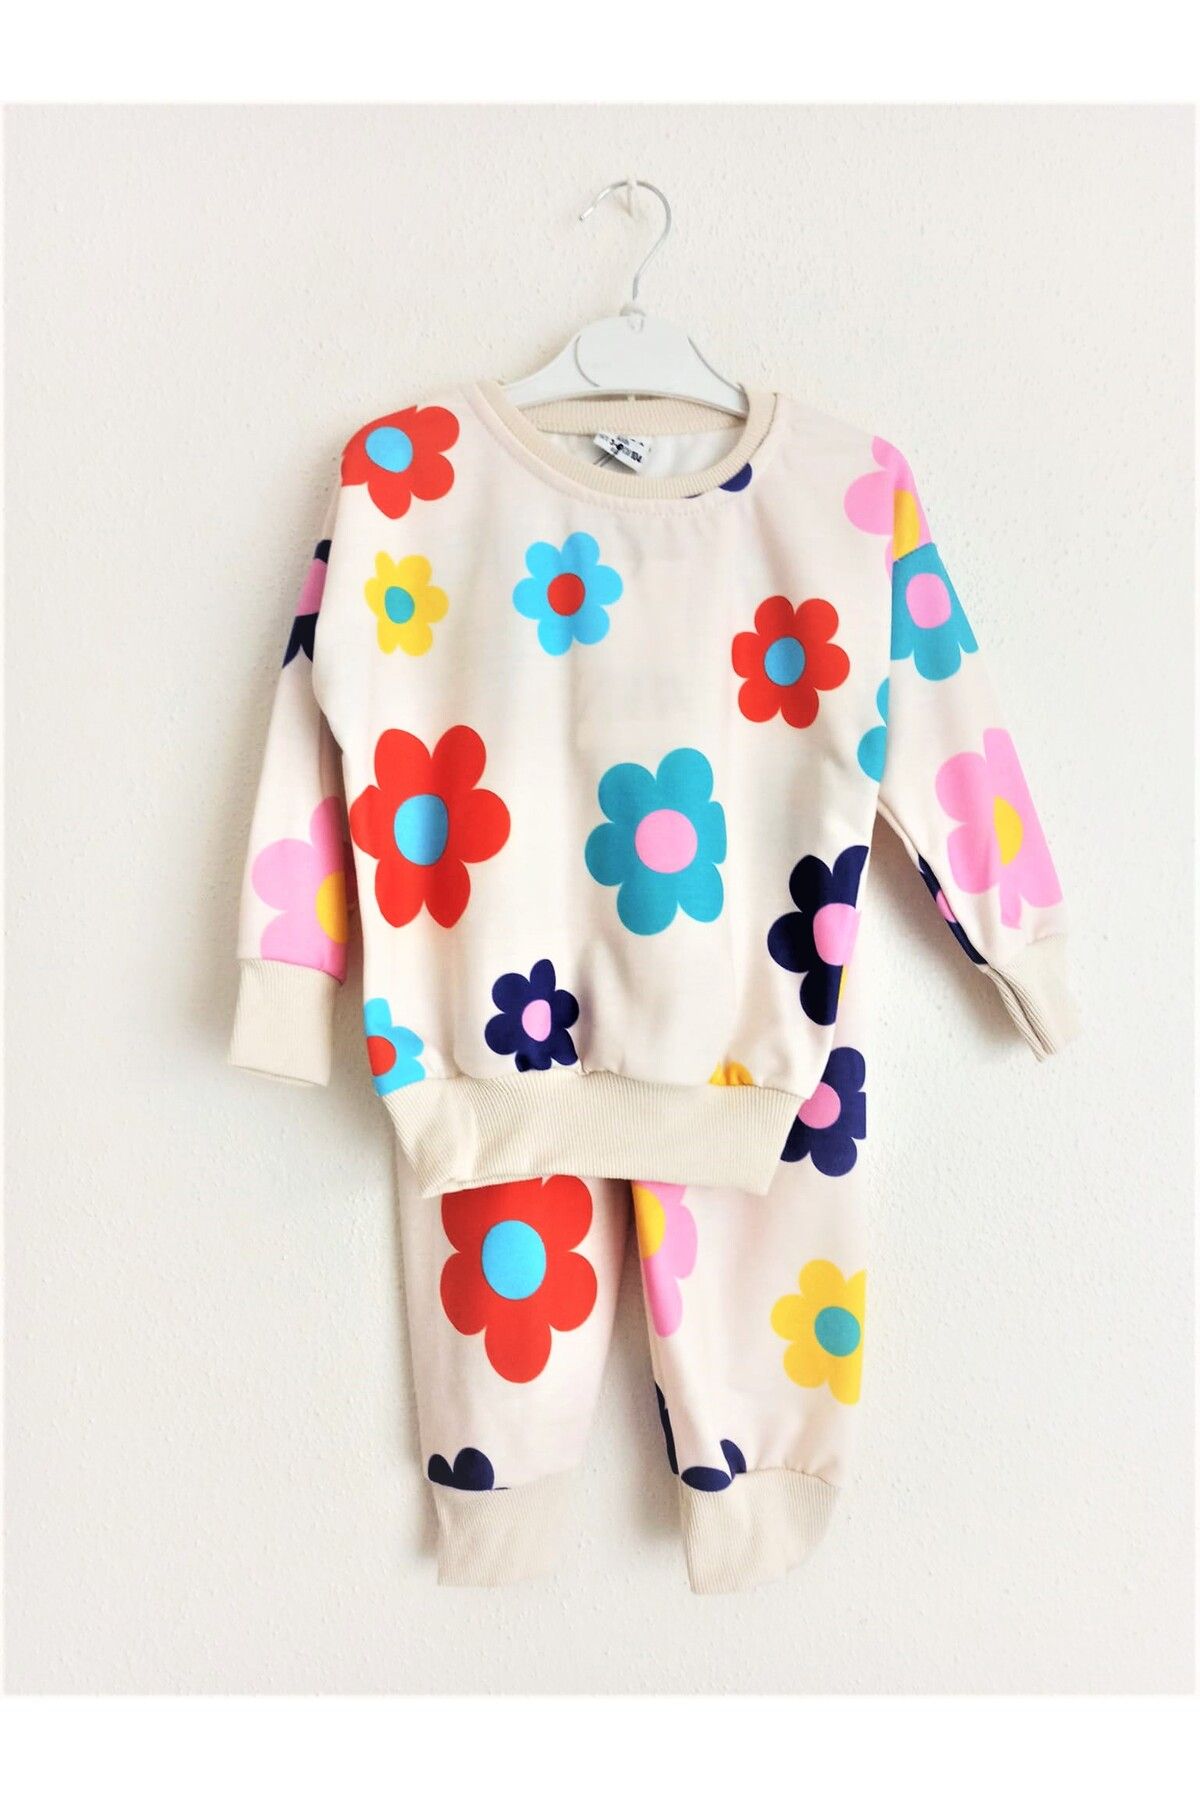 Kidscocuk Renkli Çiçek Desenli 2'li Kız Çocuk Pijama Takımı Anaokulu Kreş Takım